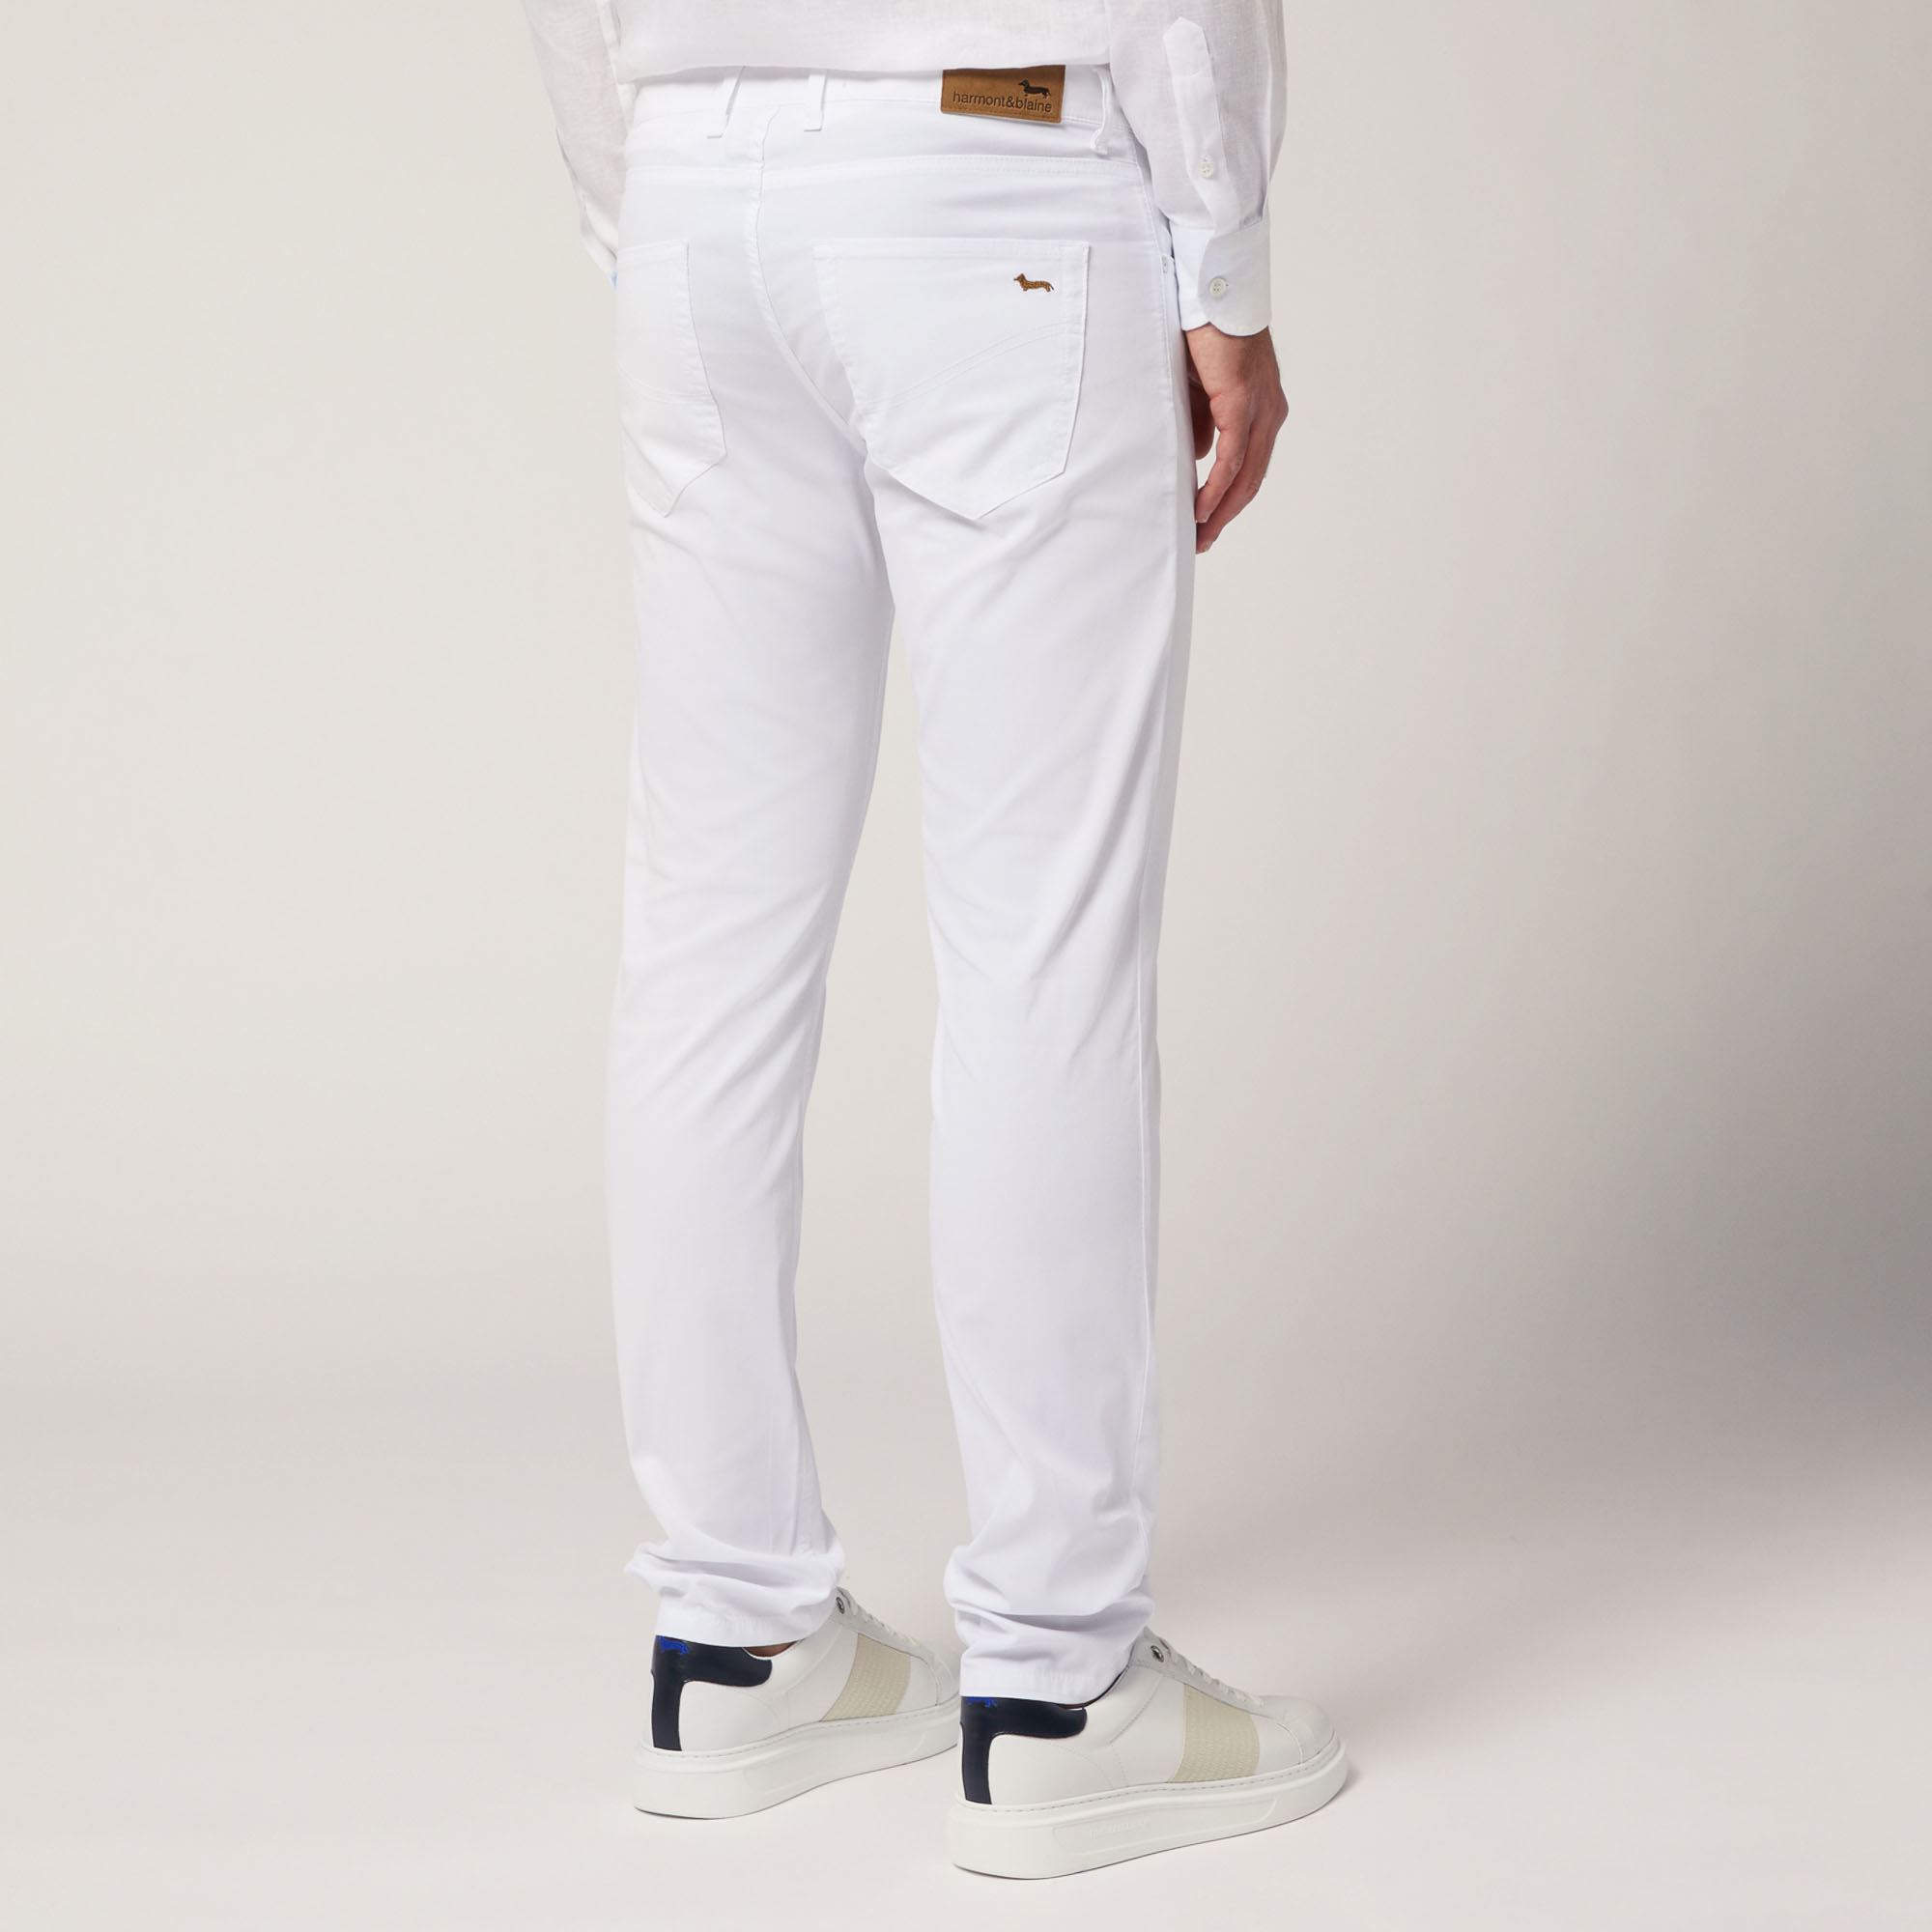 Pantalón de cinco bolsillos ajustado, Blanco, large image number 1